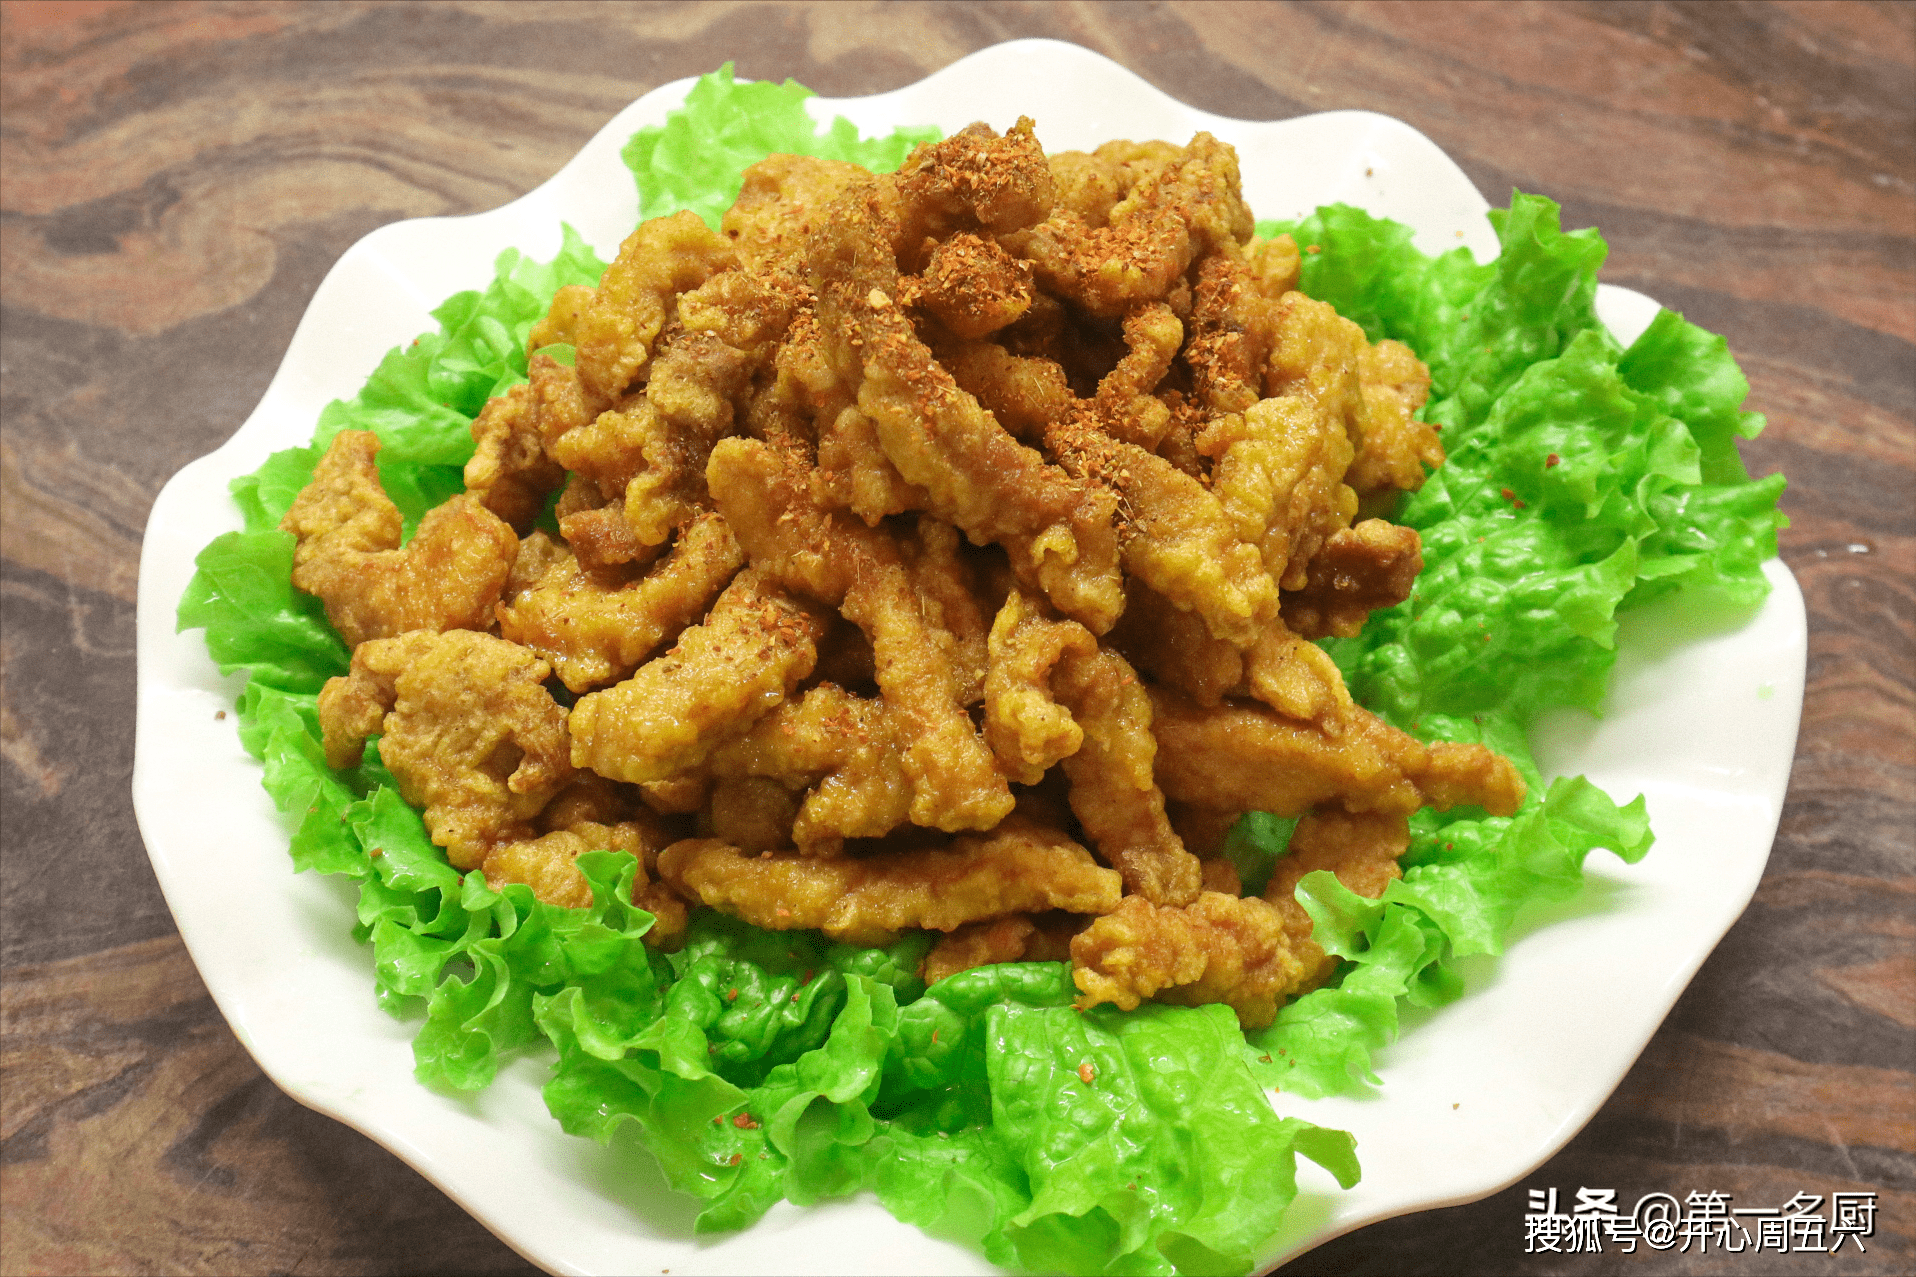 猪肋条肉炸紫酥肉有100多年的历史,属于豫菜系,是河南省特色传统名菜